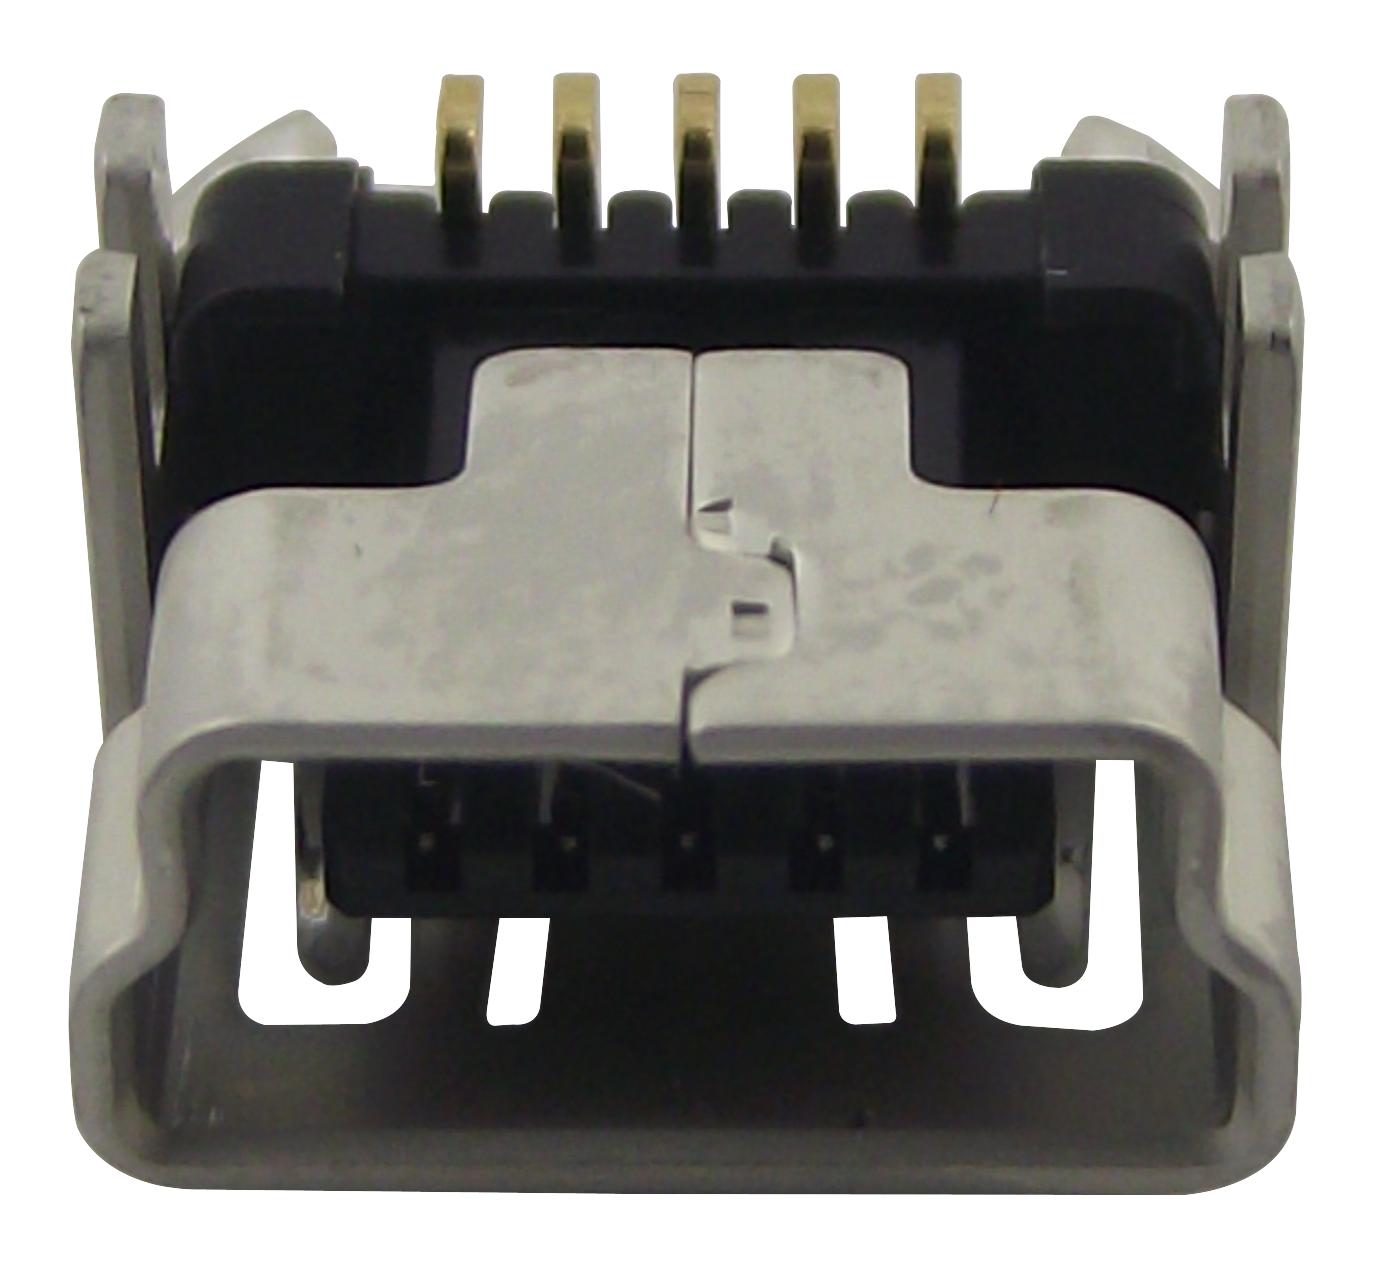 UX60SC-MB-5S8 CONNECTOR, MINI USB B, RECEPTACLE, 5WAY HIROSE(HRS)